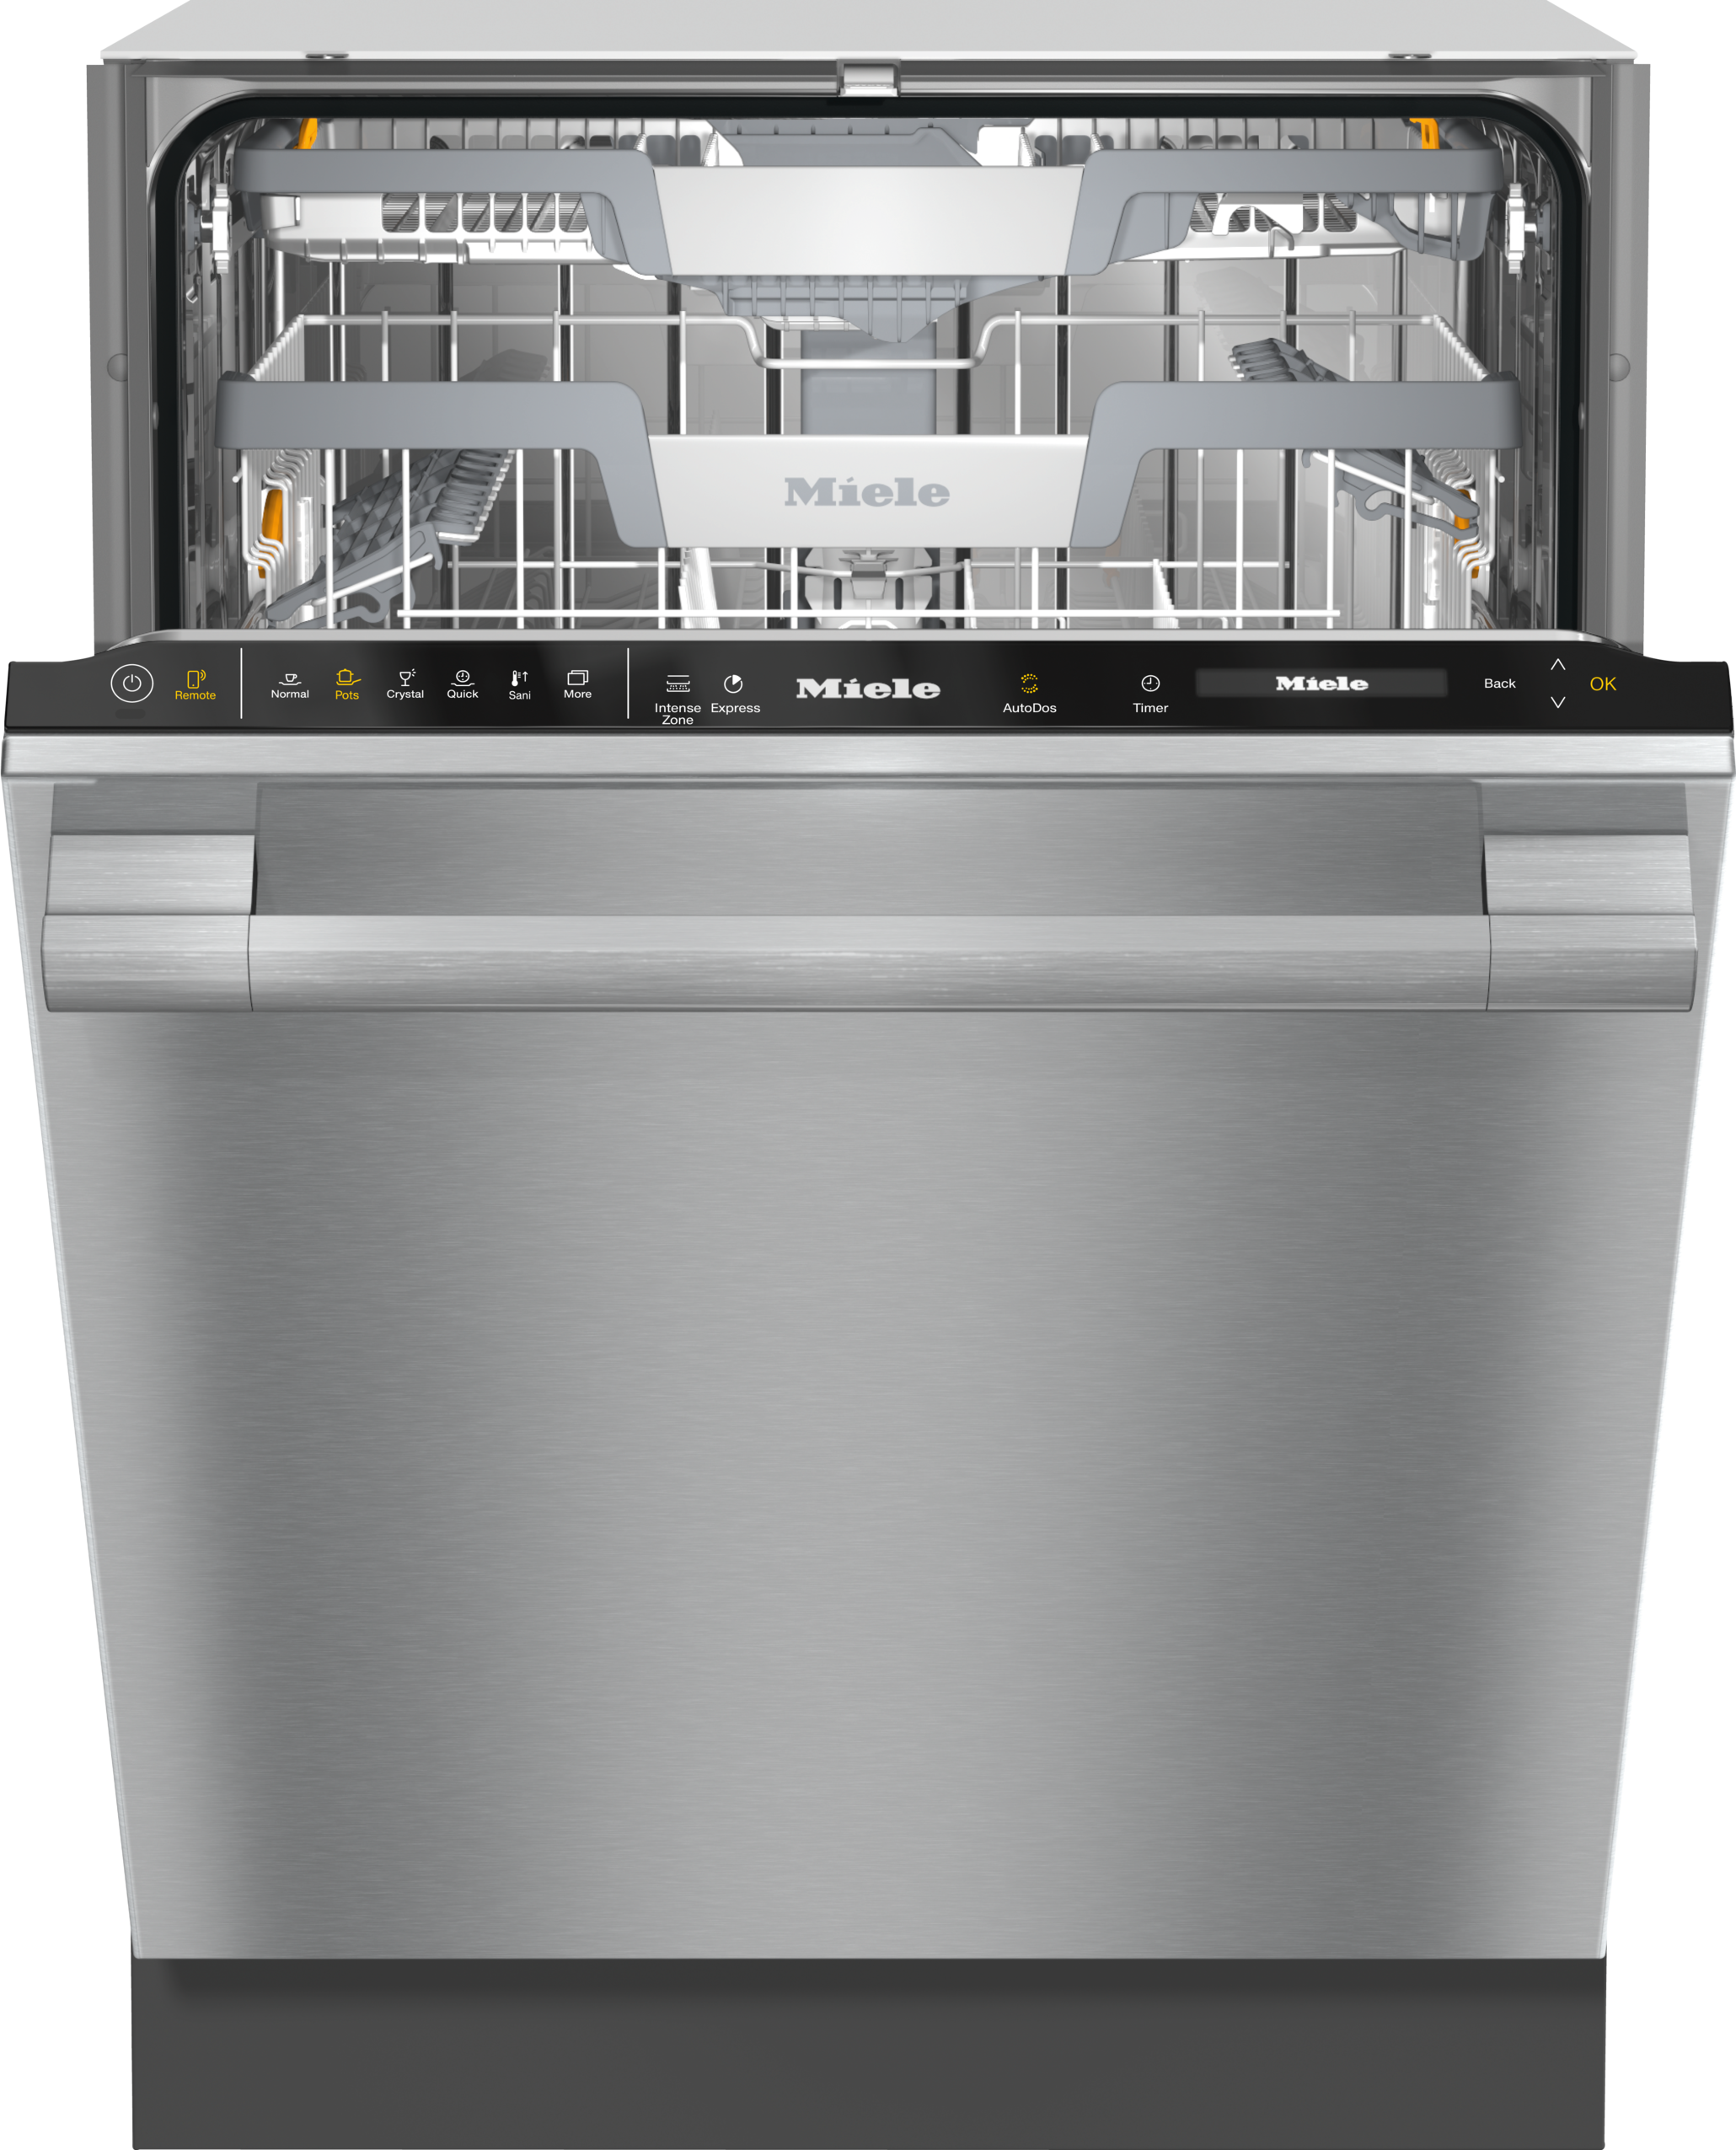 miele ecosensor turbothermic dishwasher